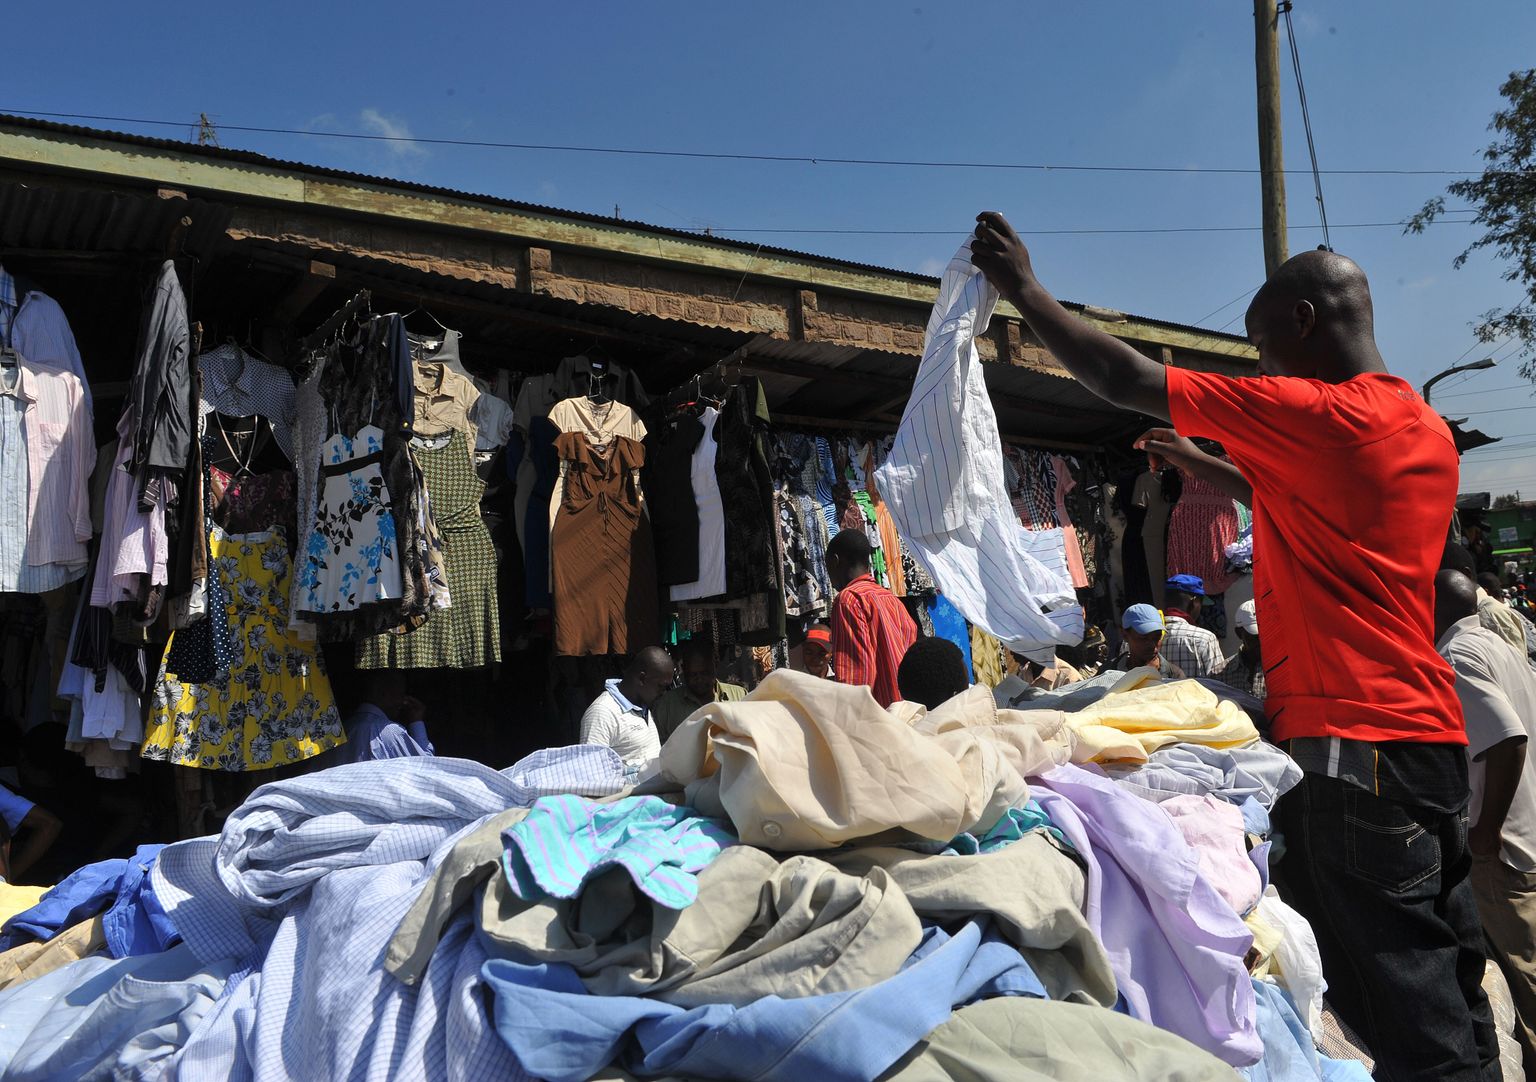 Keenia mees kasutatud riideid sorteerimas.